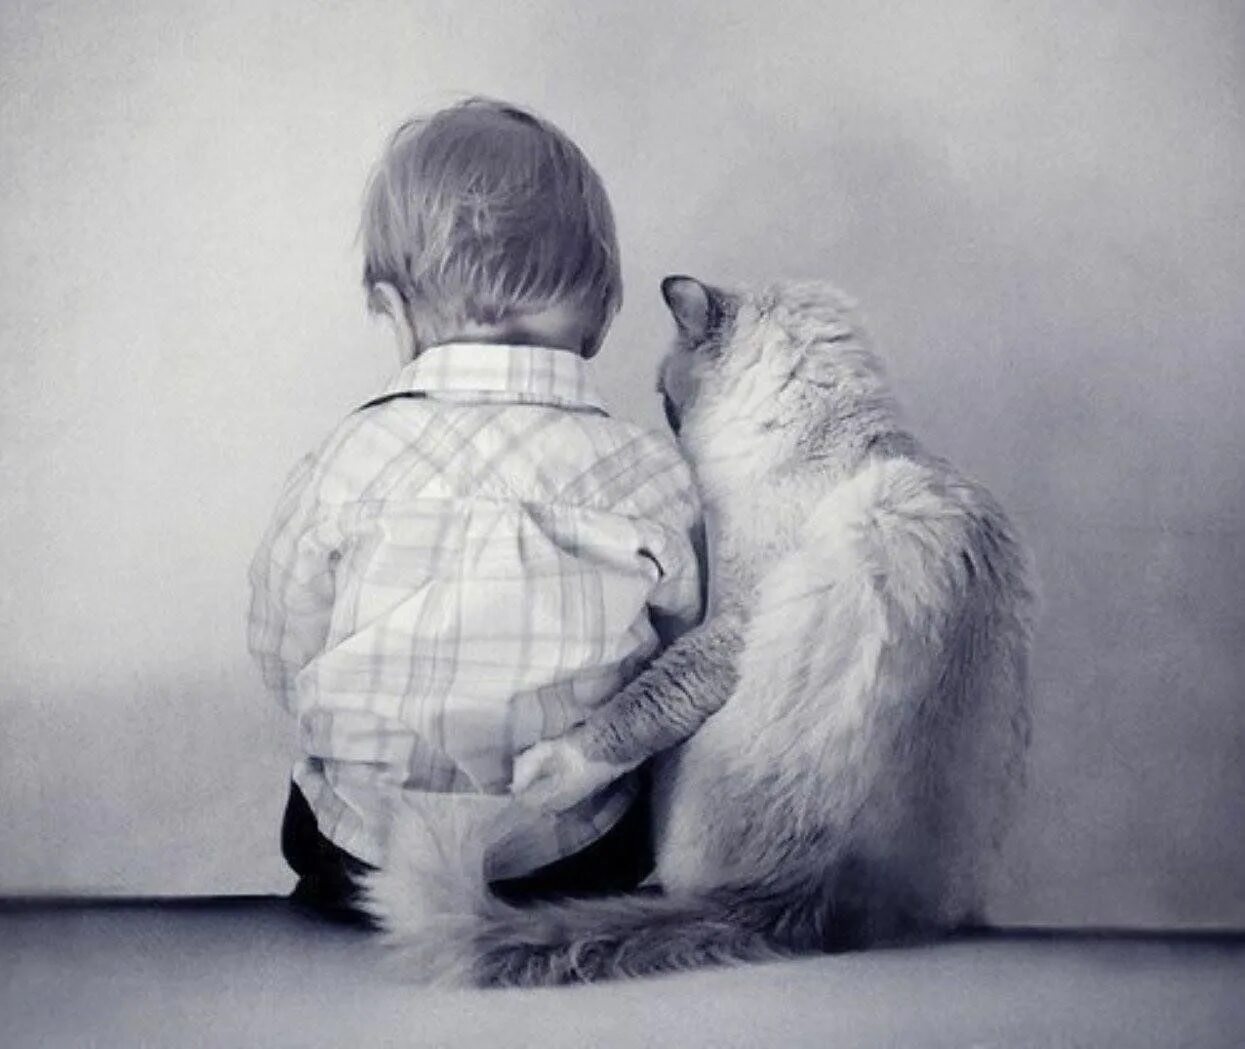 Была просто дружба в. Мальчик обнимает кота. Обнимашки людей. Поддержка в трудную минуту. Объятия животных.